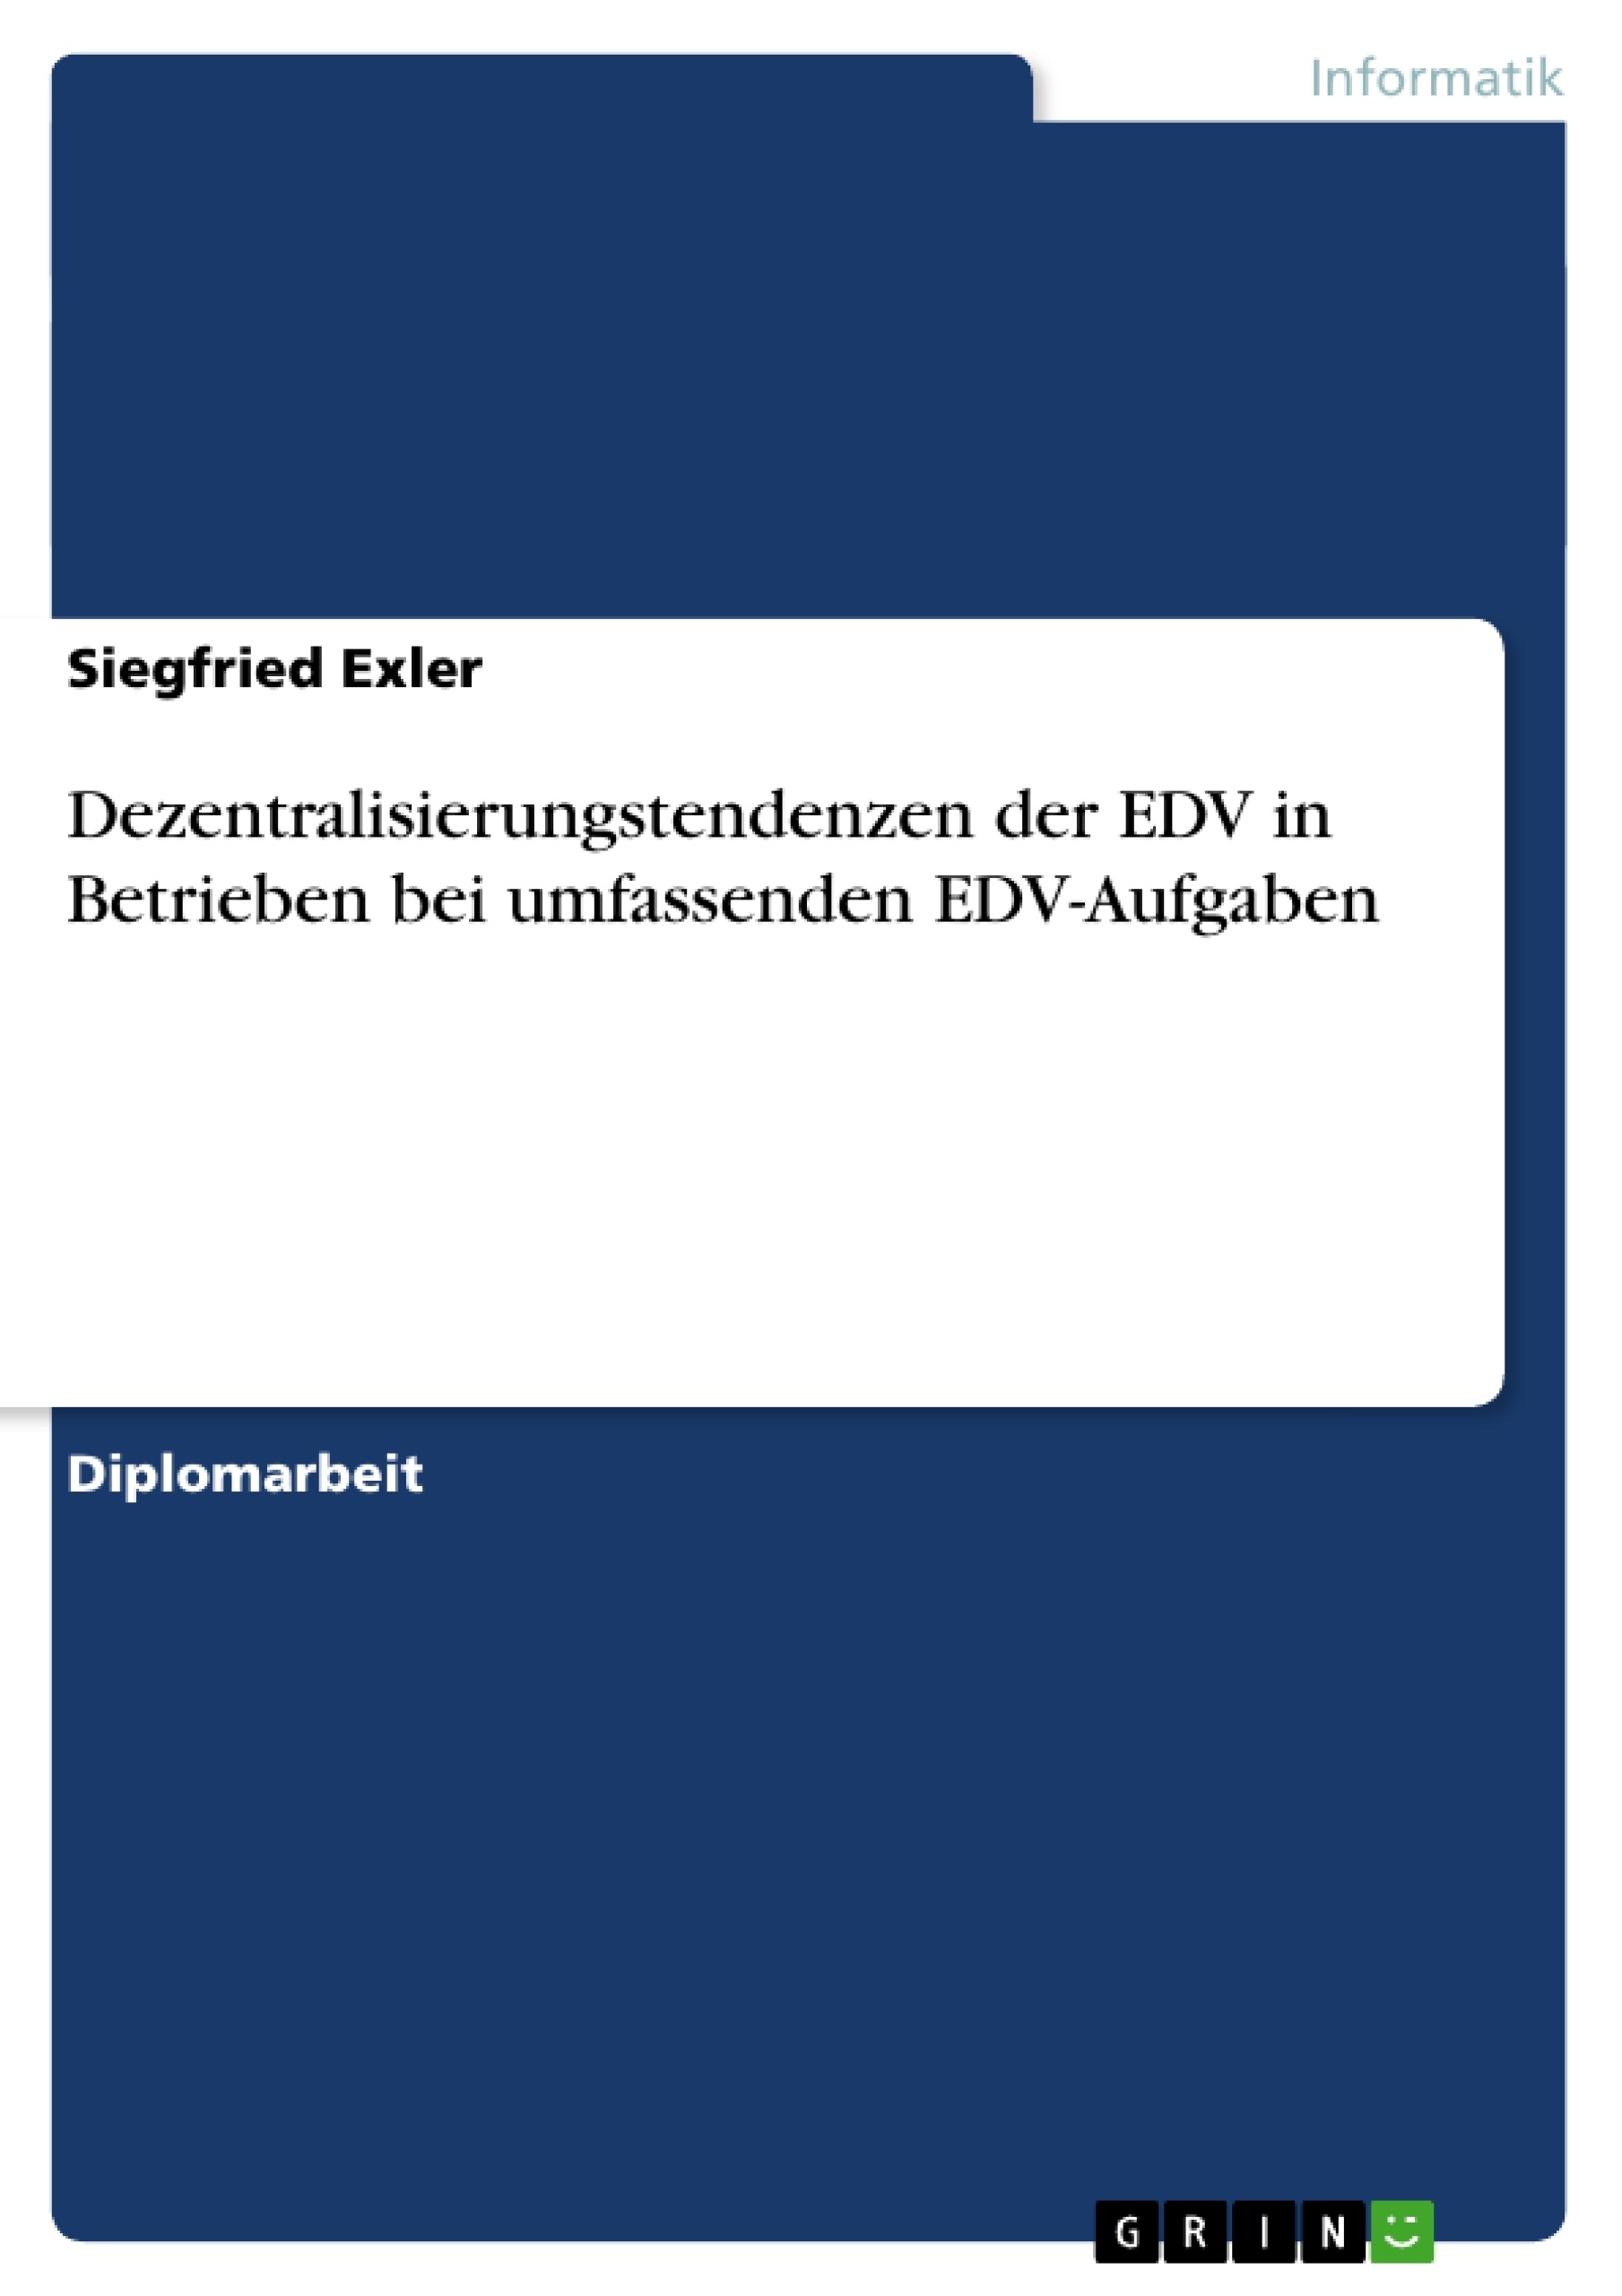 Title: Dezentralisierungstendenzen der EDV in Betrieben bei umfassenden EDV-Aufgaben